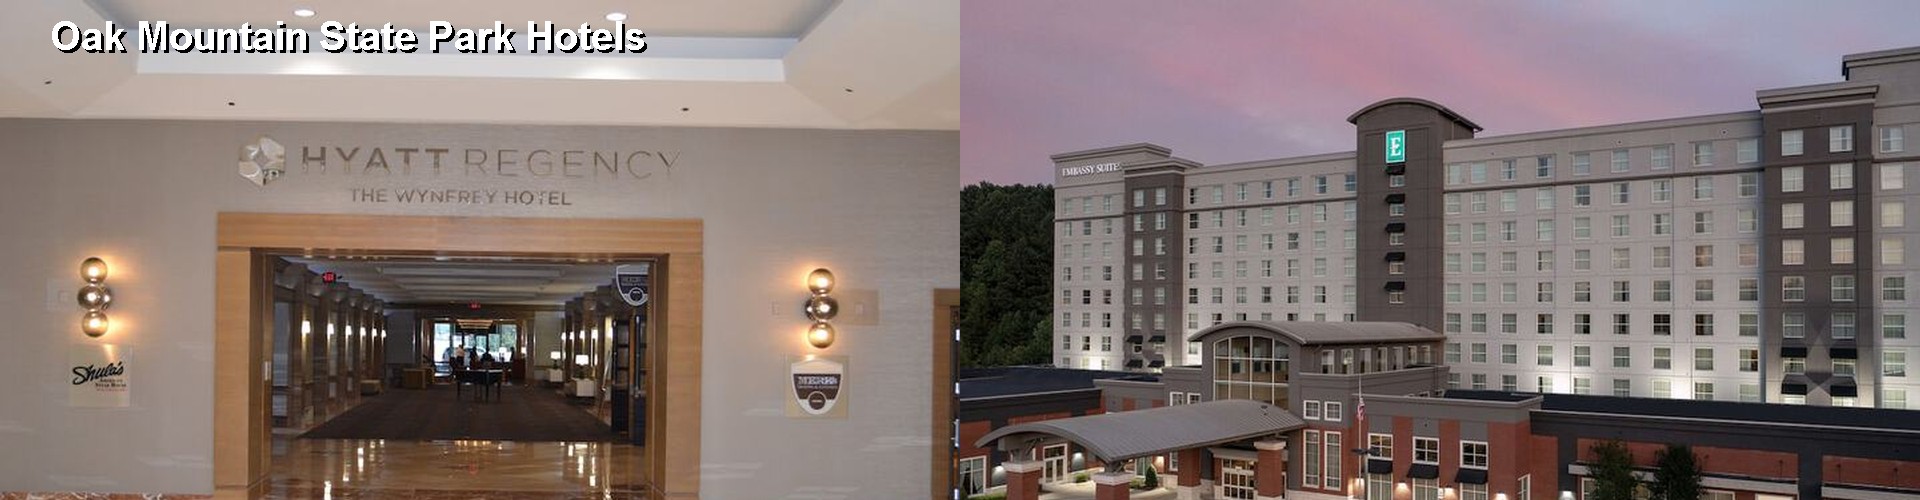 4 Best Hotels near Oak Mountain State Park